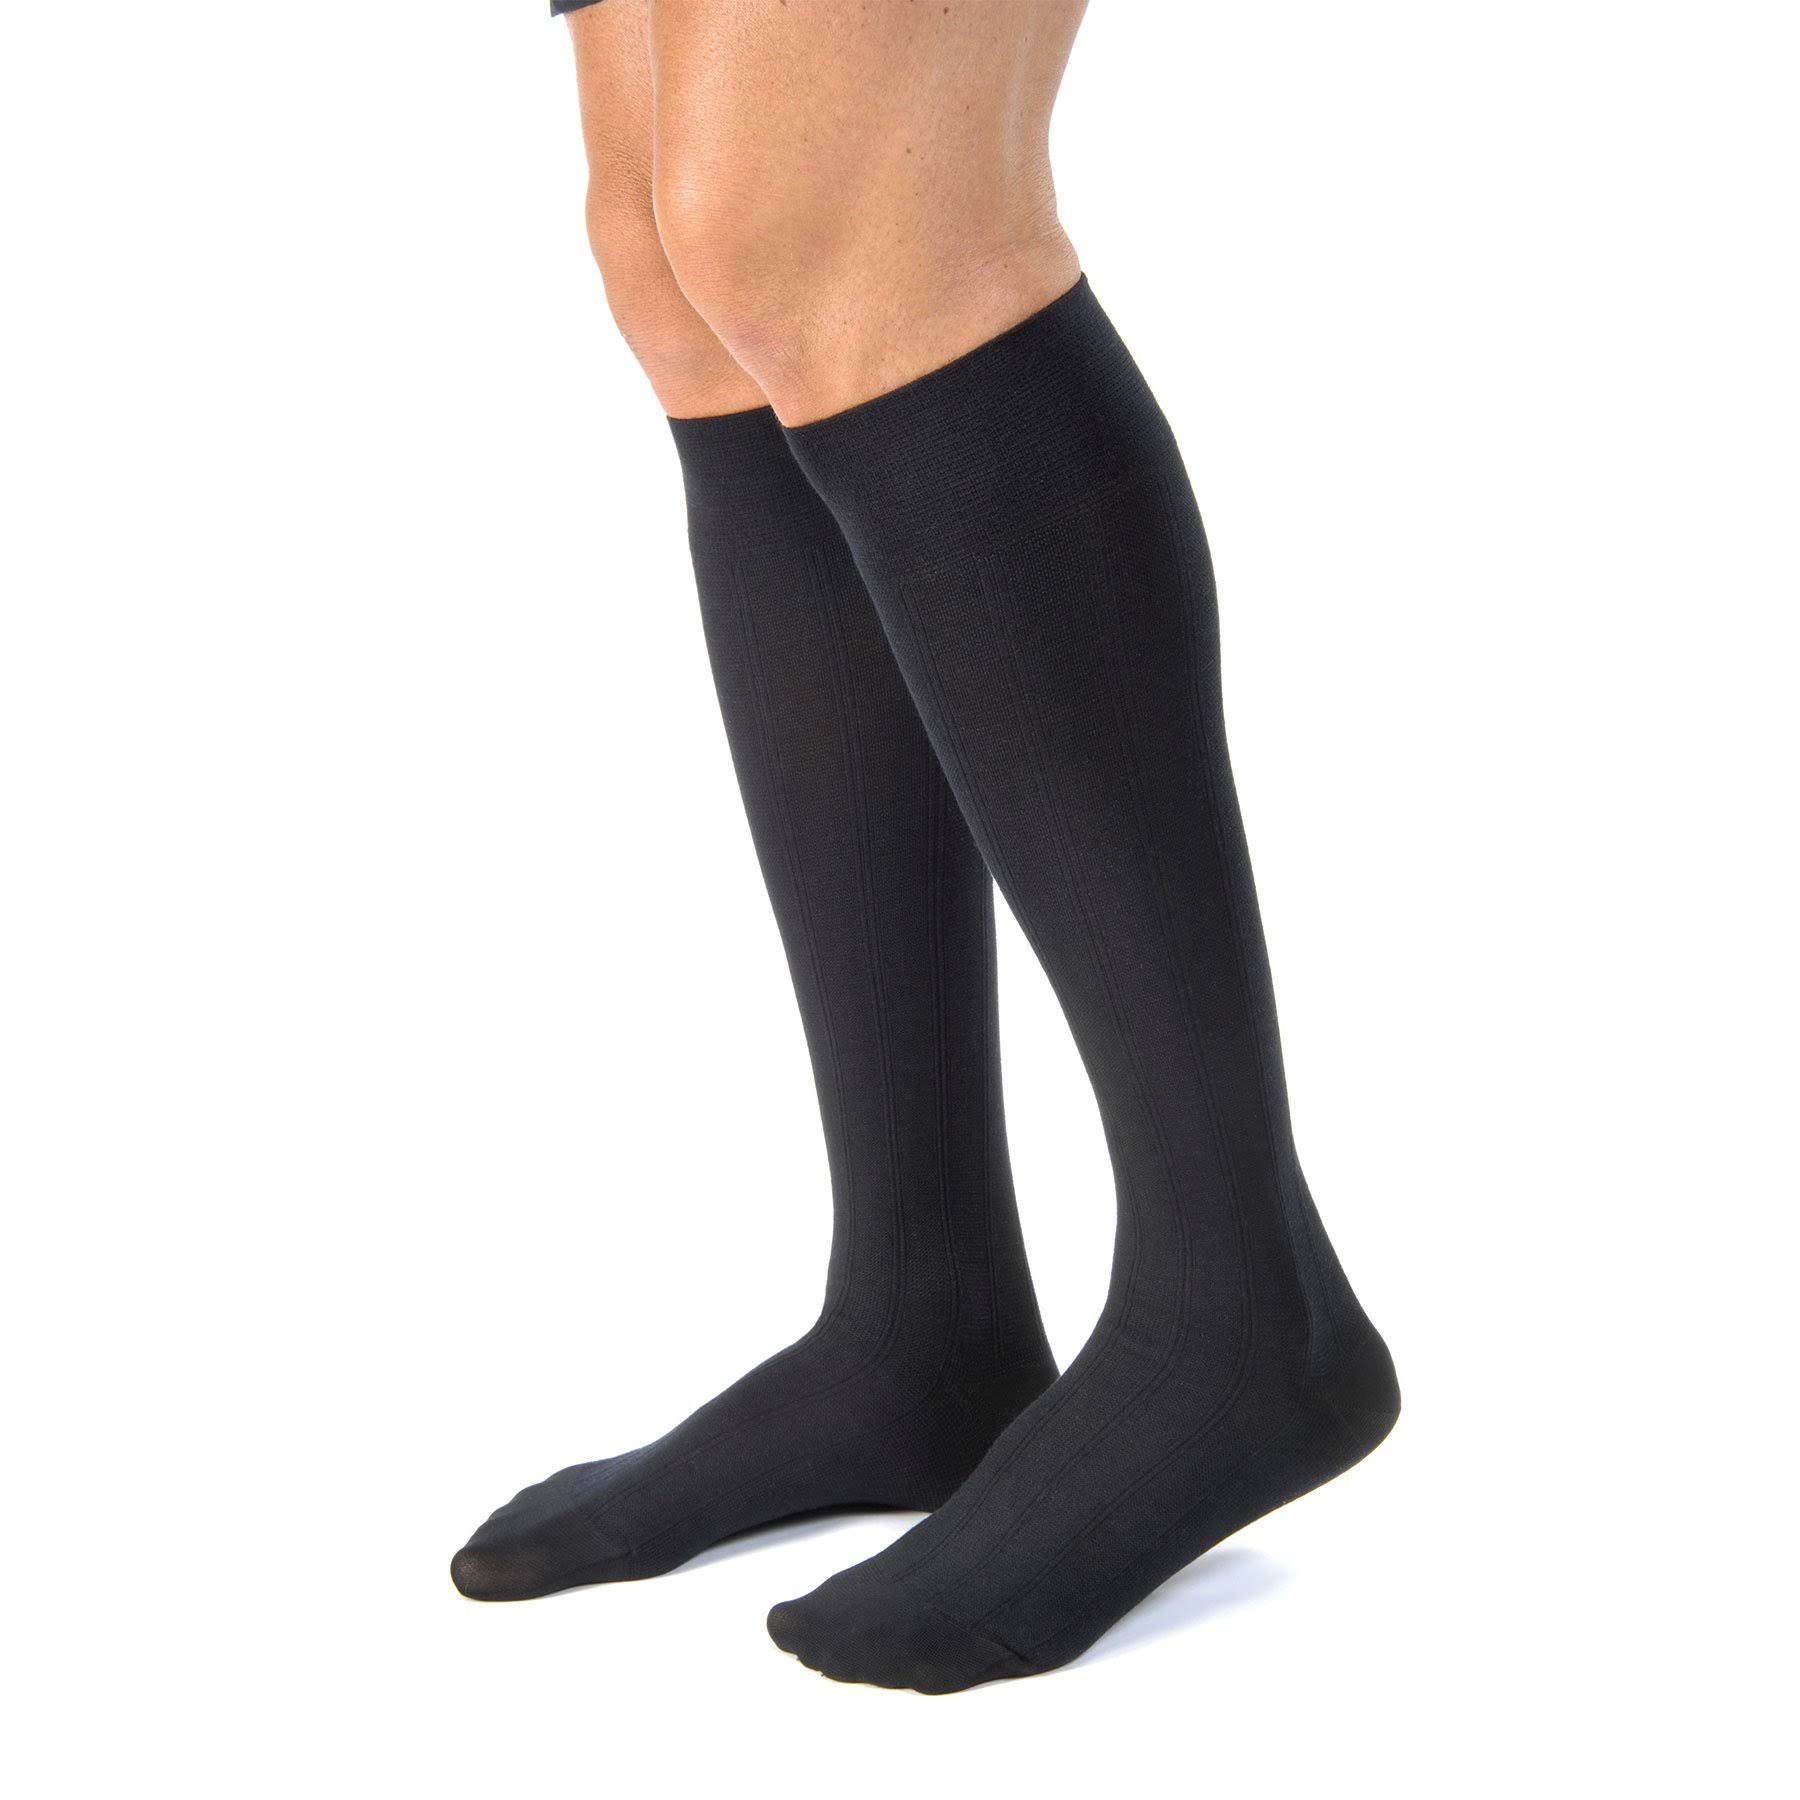 Jobst Unisex Activewear Knee High Socks - Black, XLarge